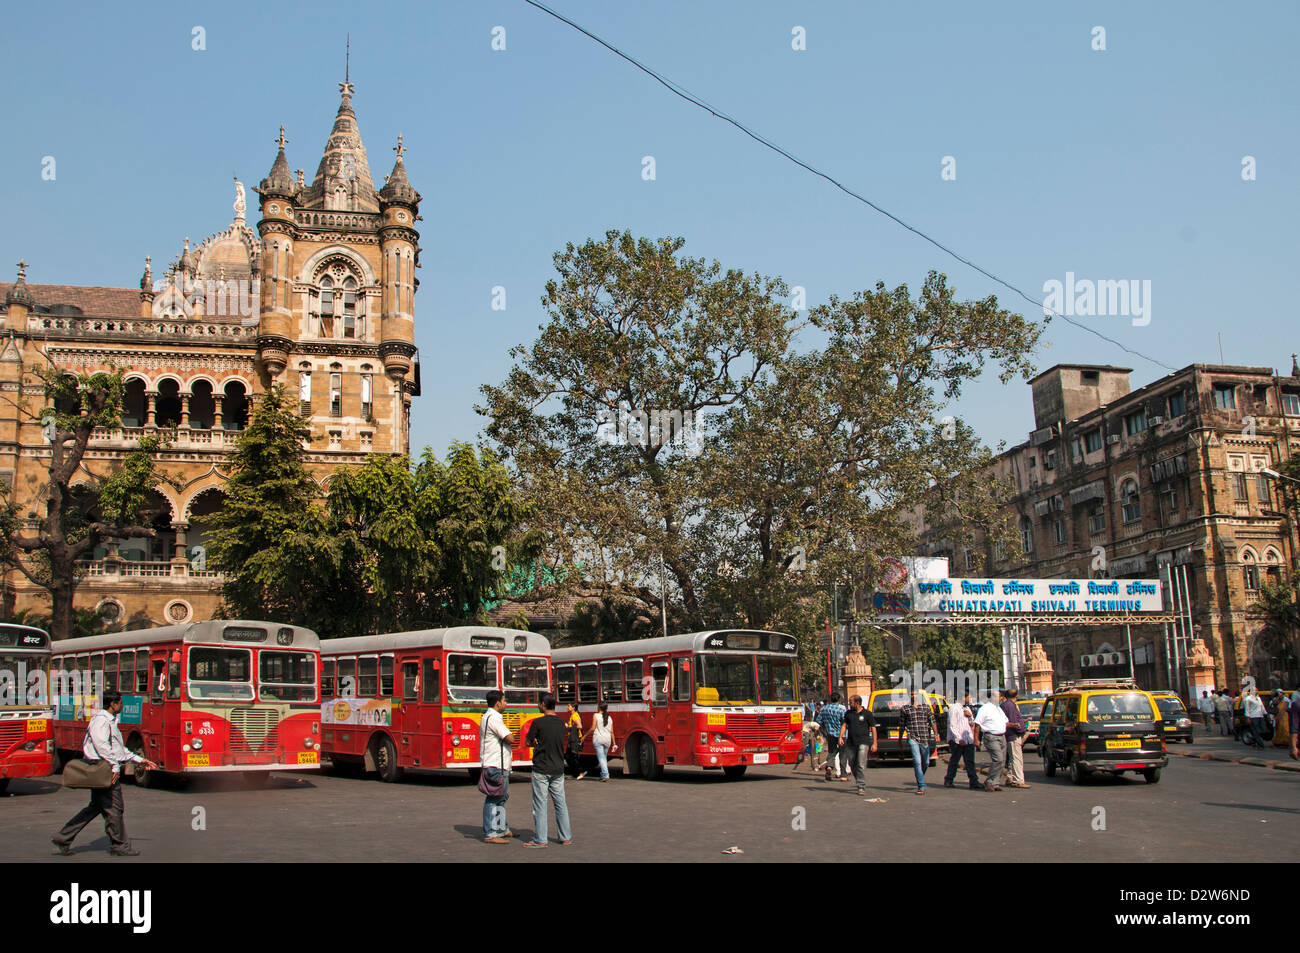 La gare Chhatrapati Shivaji terminus Gare Victoria ( ) Mumbai ( Bombay ) de l'architecture néo-gothique victorienne Inde Banque D'Images